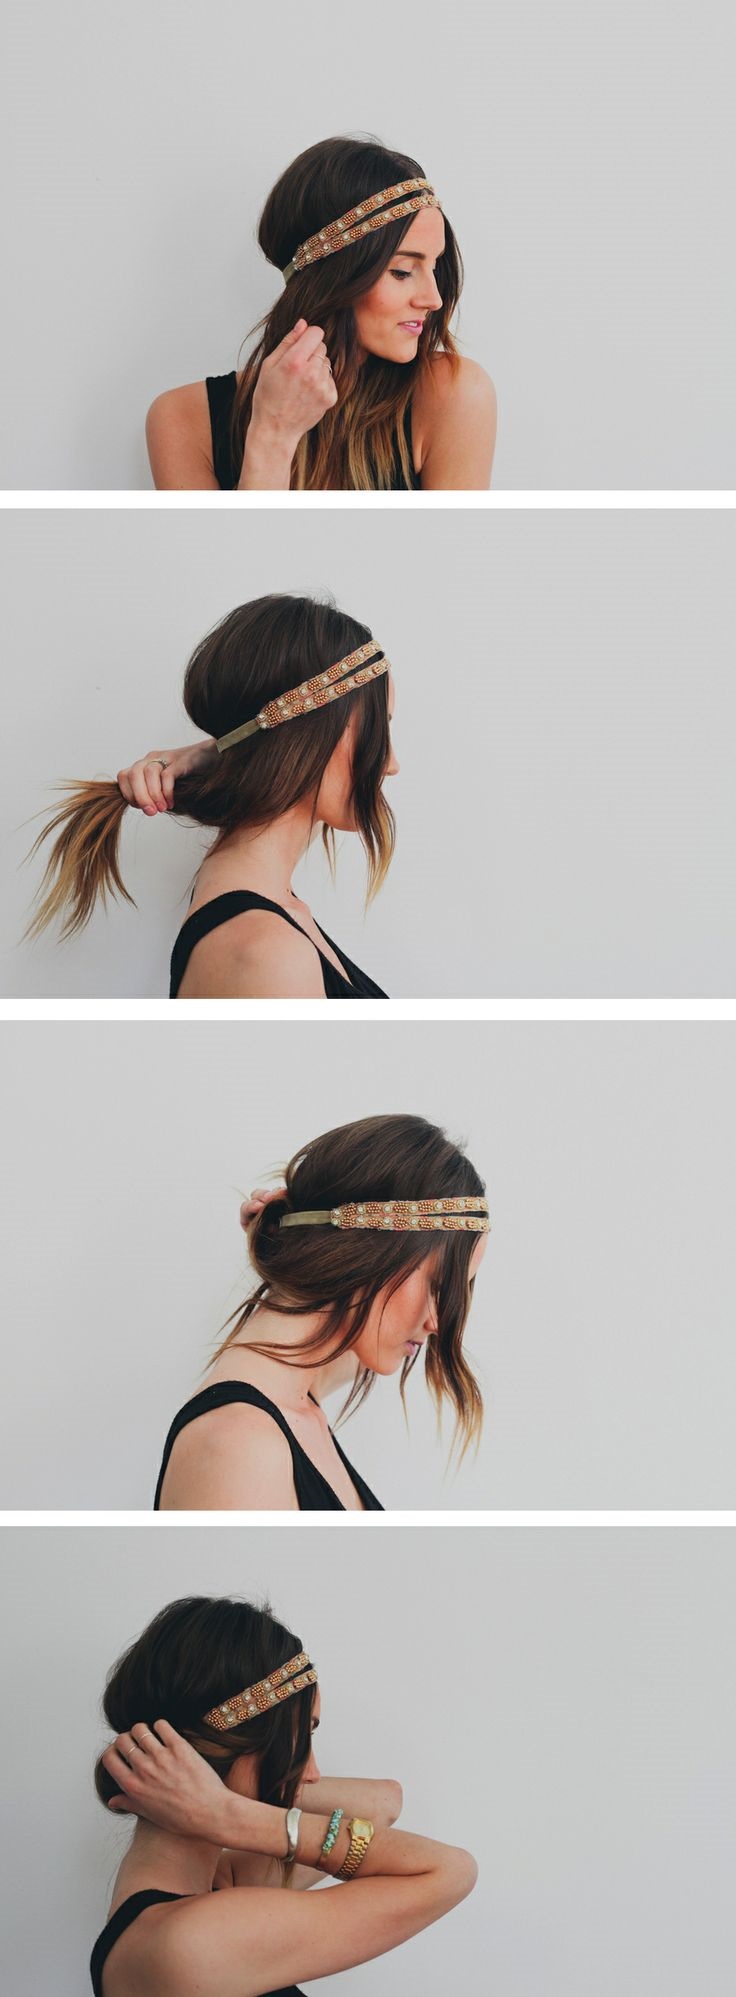 headband-style